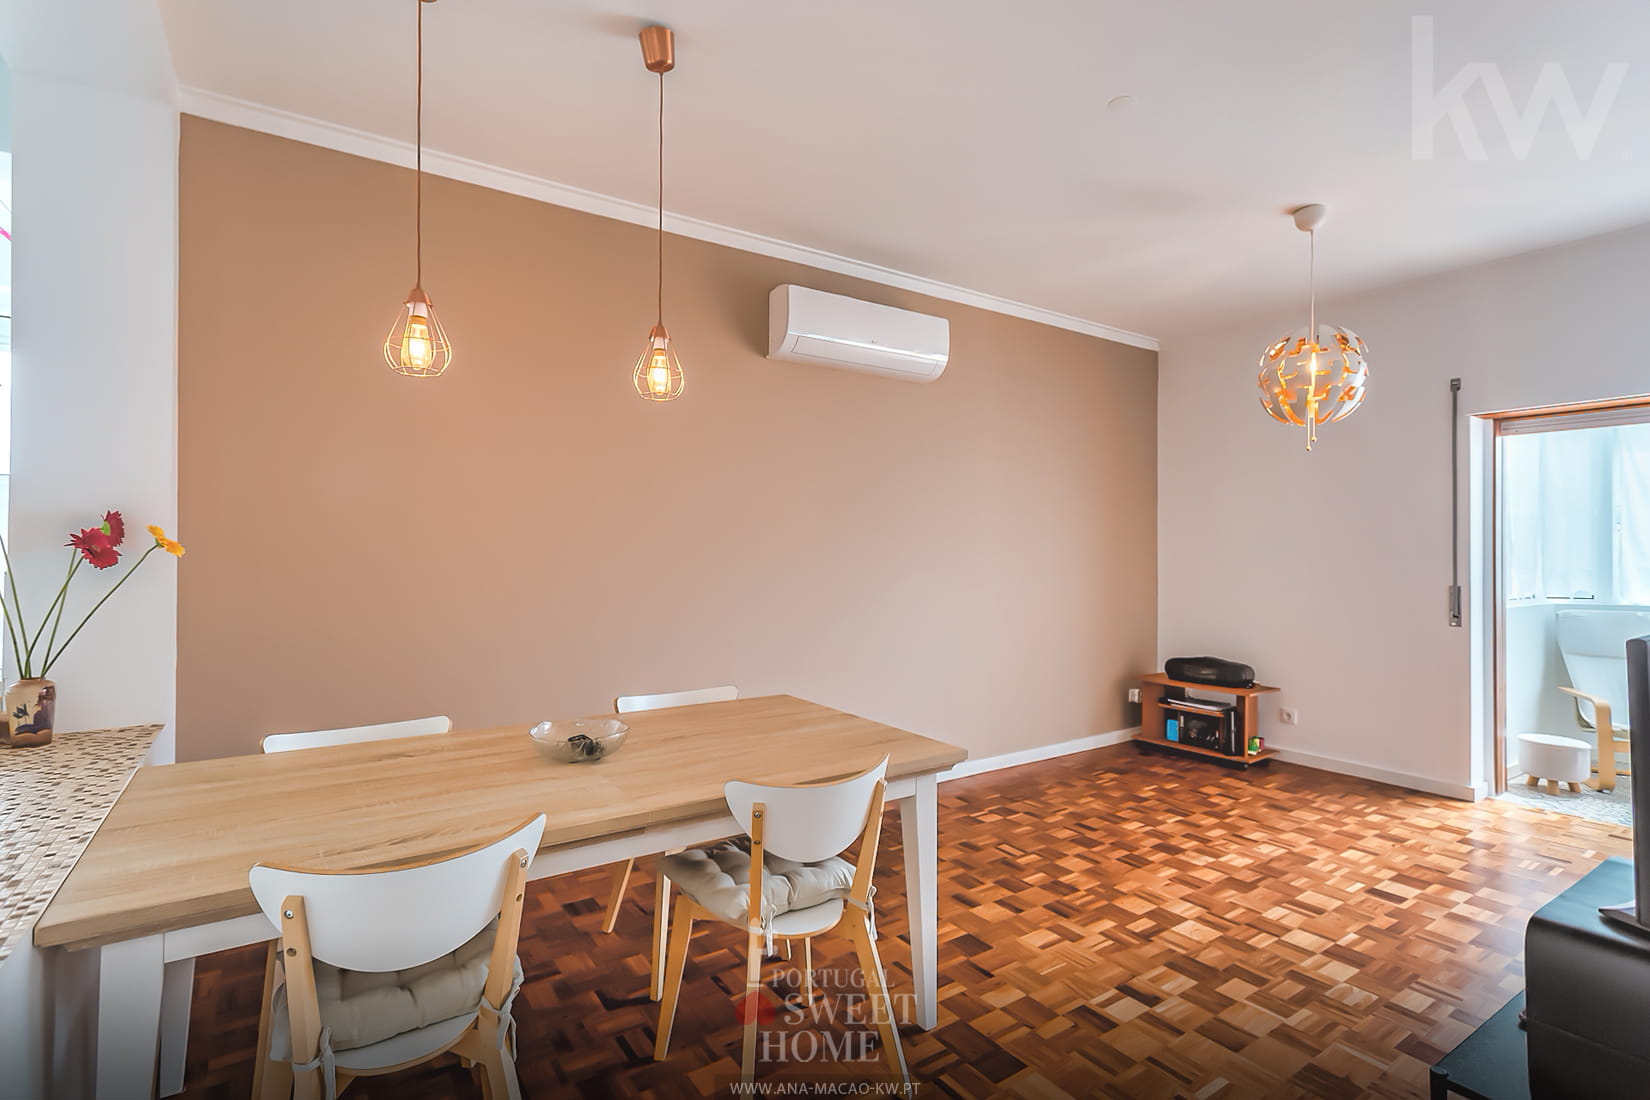 Salon et salle à manger (19,6 m²) avec connexion à la cuisine et à la salle à manger